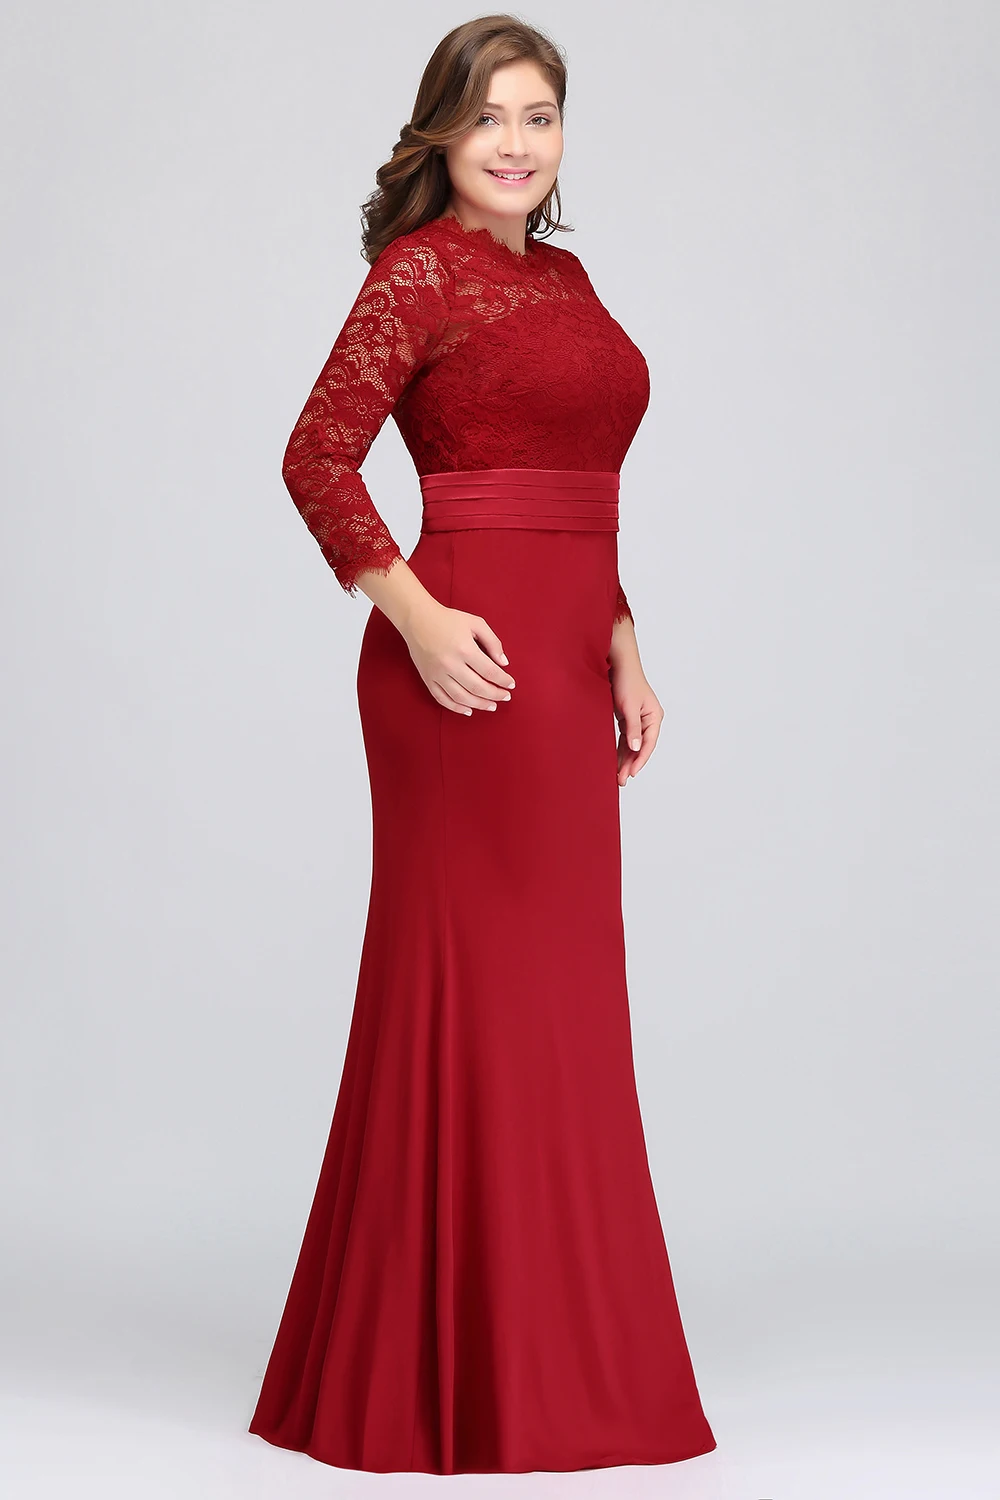 Xunbei Русалка вечернее платье Элегантный бордовый с длинным рукавом формальное платье Кружева Аппликация robe de soiree